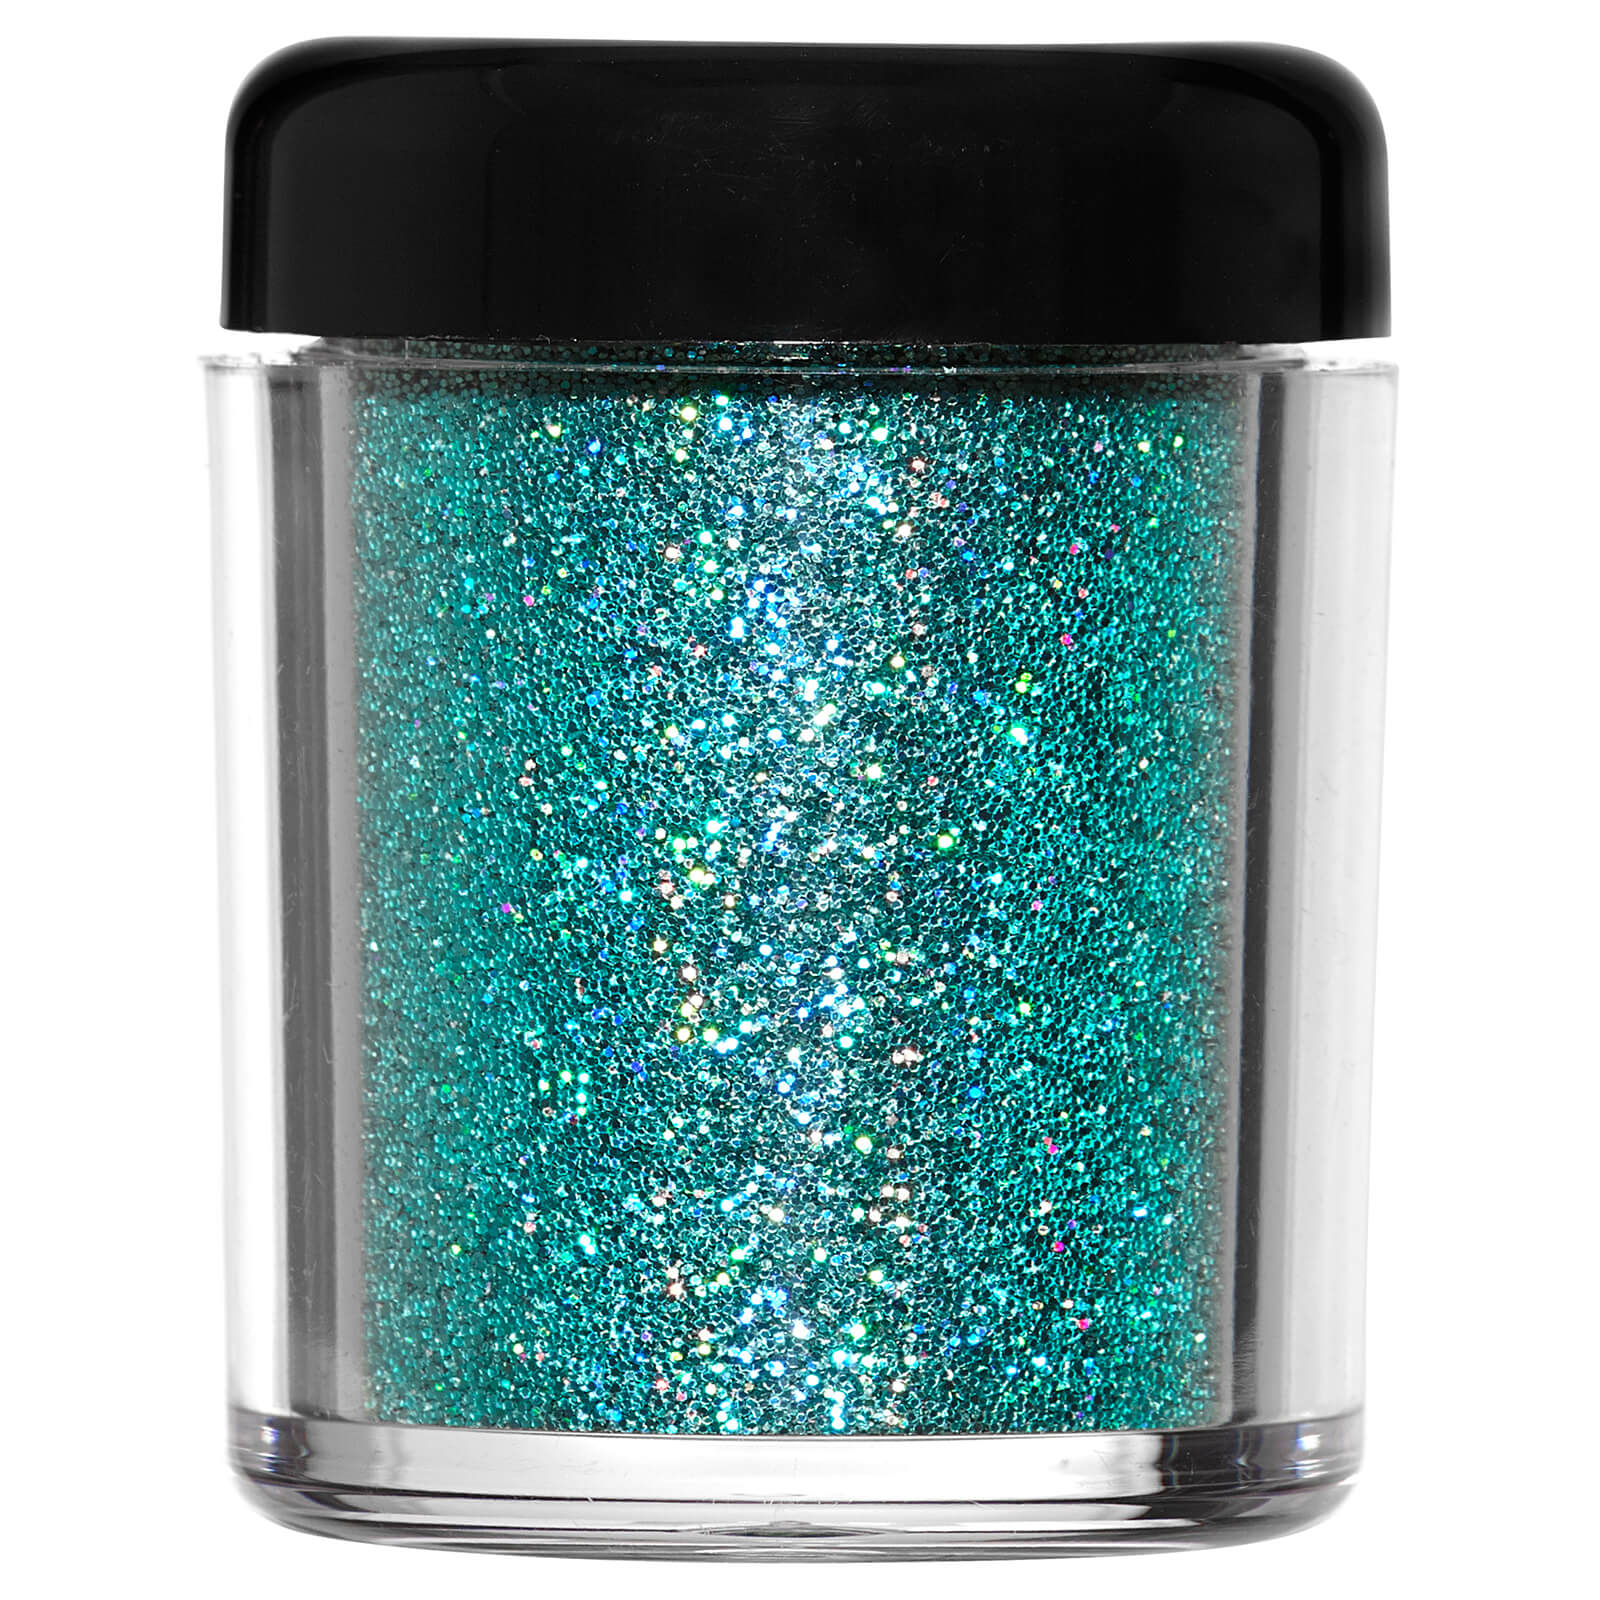 Barry M Cosmetics Glitter Rush Body Glitter (Various Shades) - Aquamarine